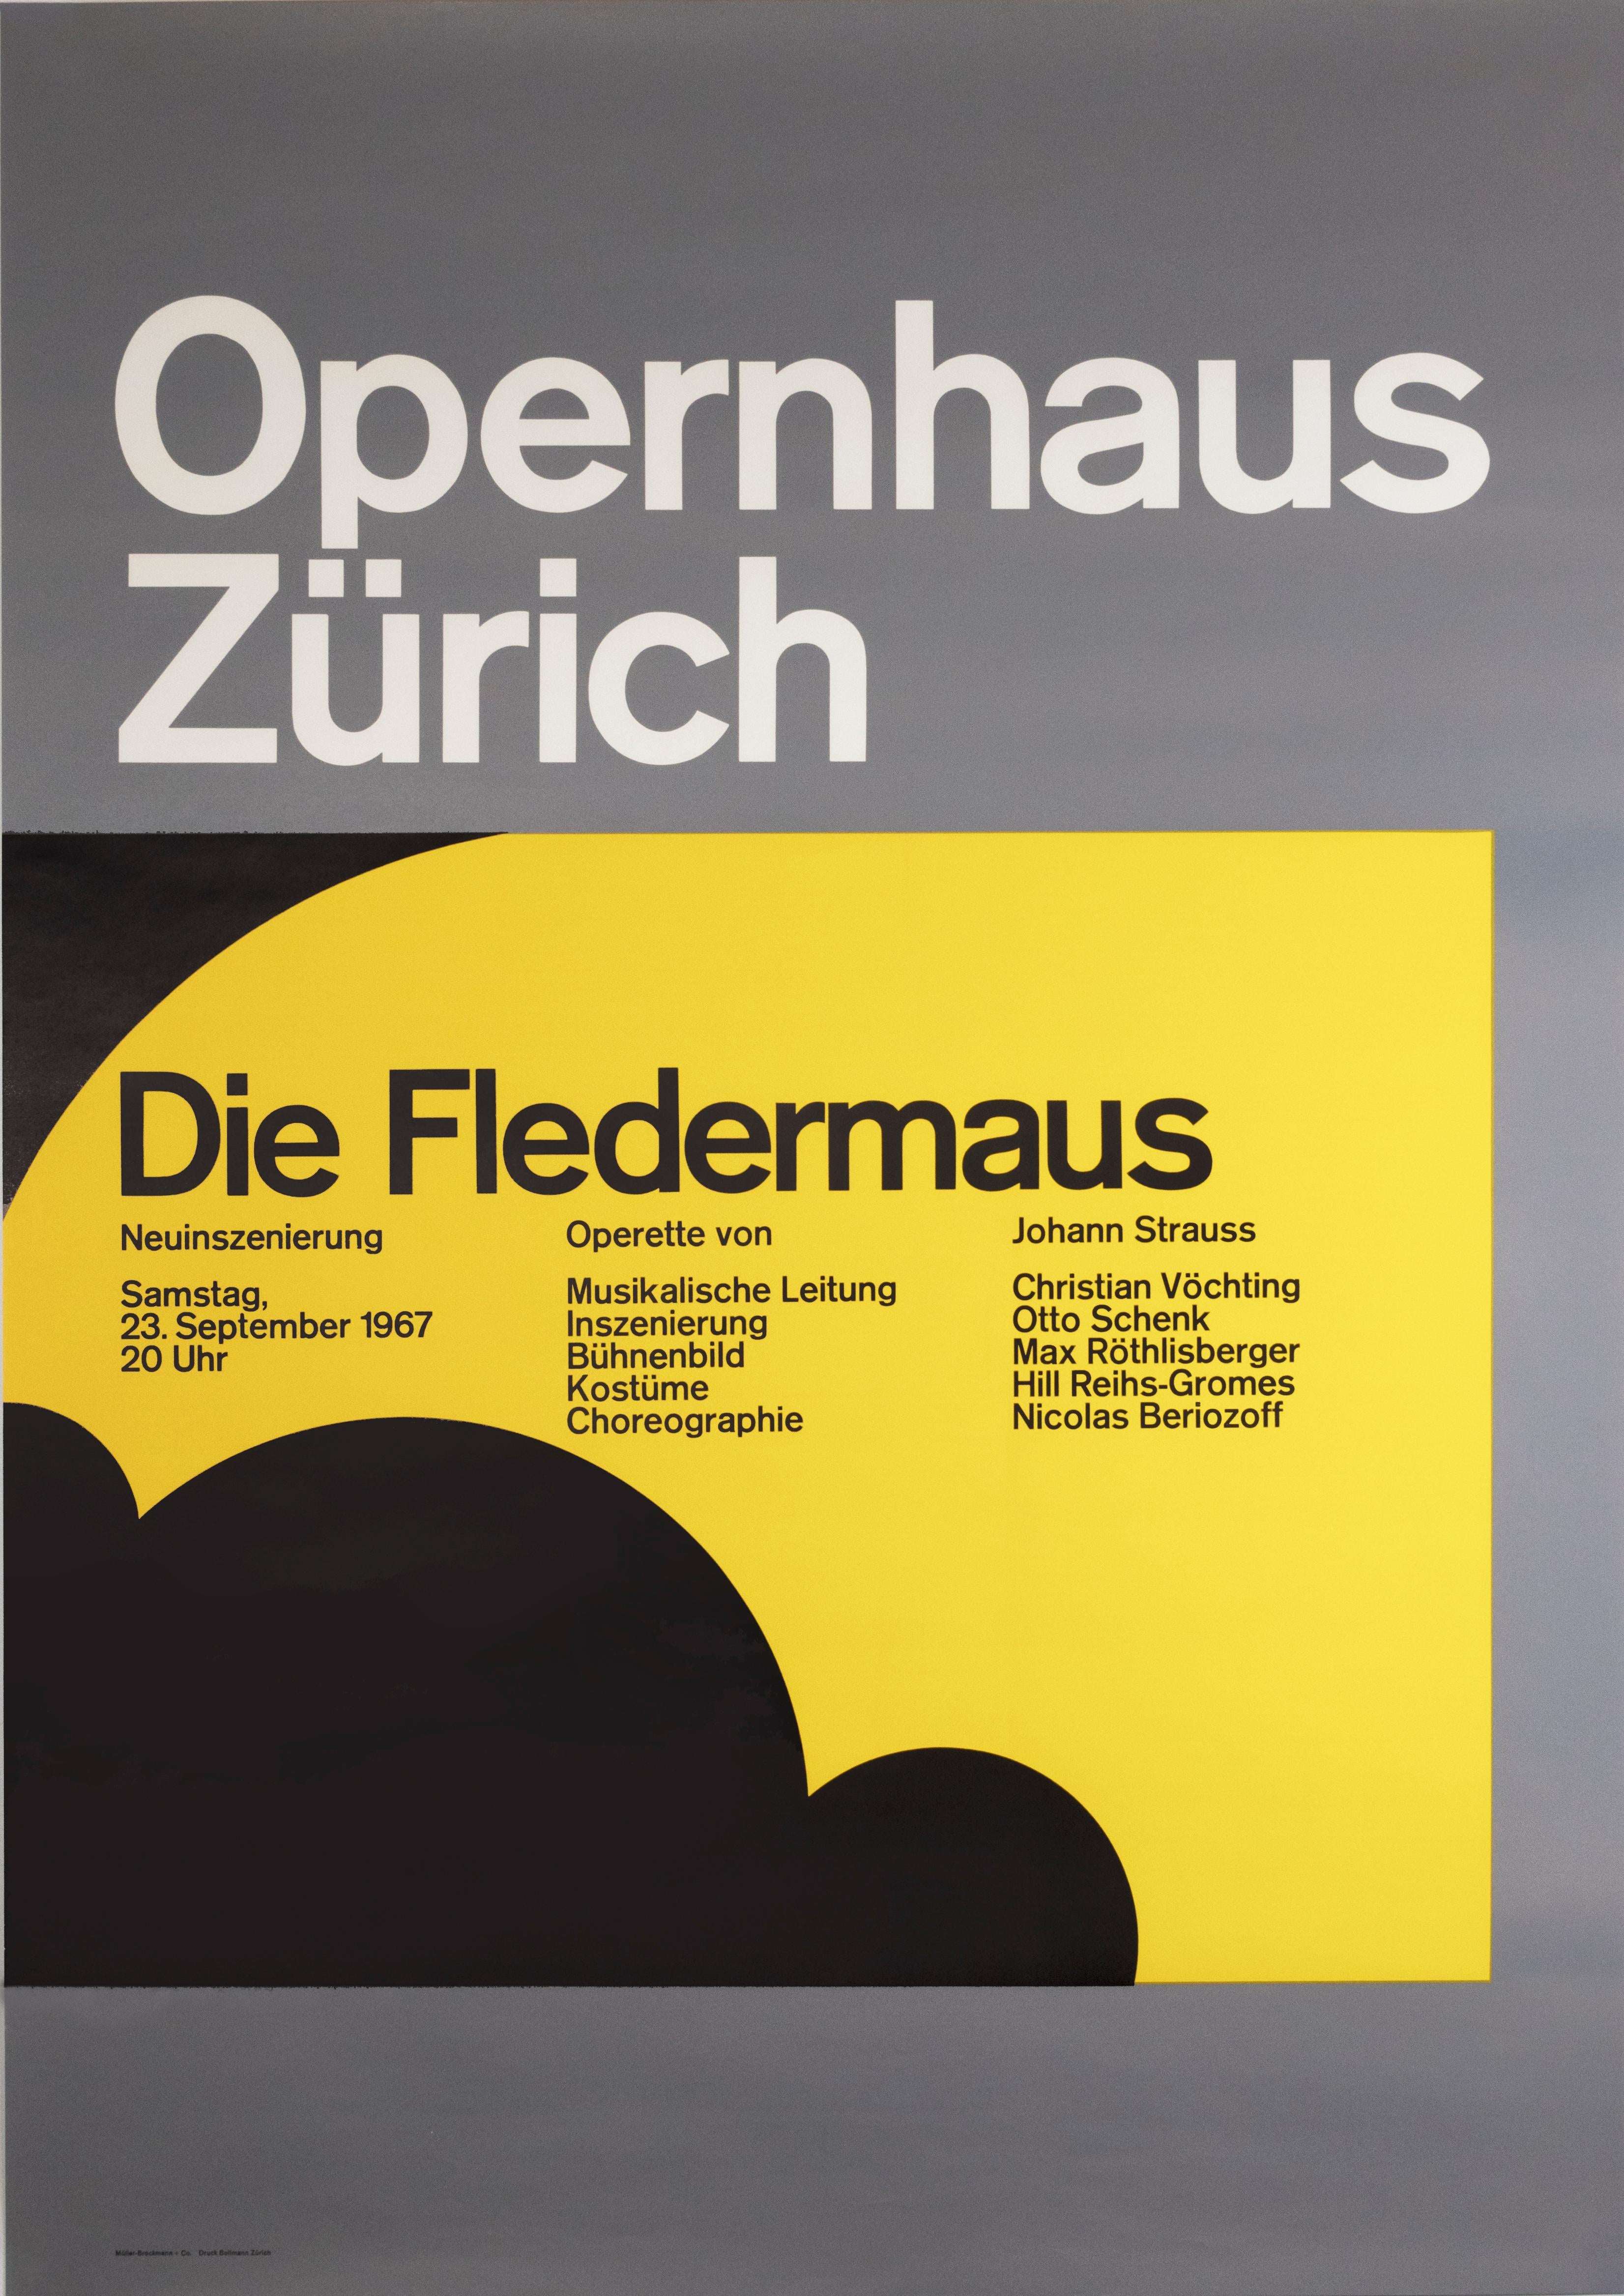 Josef Müller-Brockmann - "Opernhaus Zurich - Die Fledermaus (The Bat)"  Opera Original Vintage Poster For Sale at 1stDibs